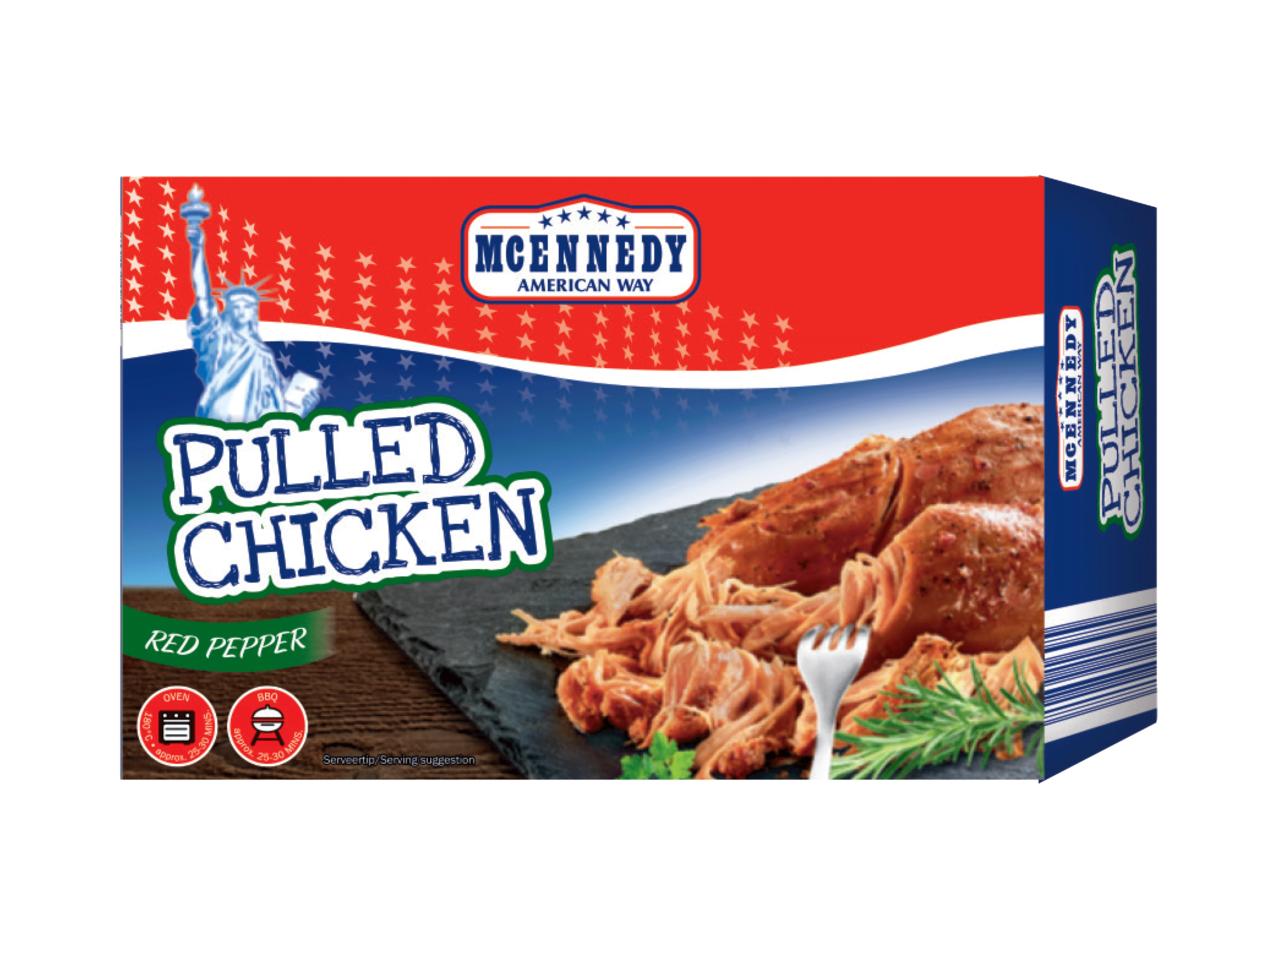 MCENNEDY Pulled Chicken